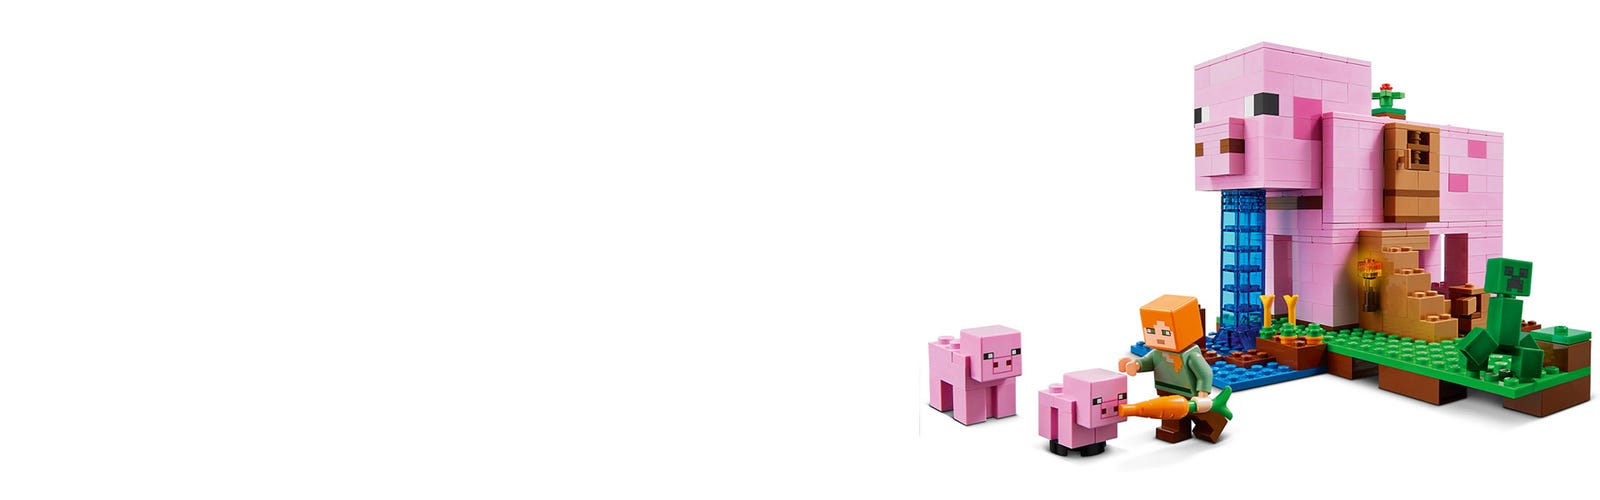 Lego®minecraft 21170 - la maison cochon, jeux de constructions & maquettes